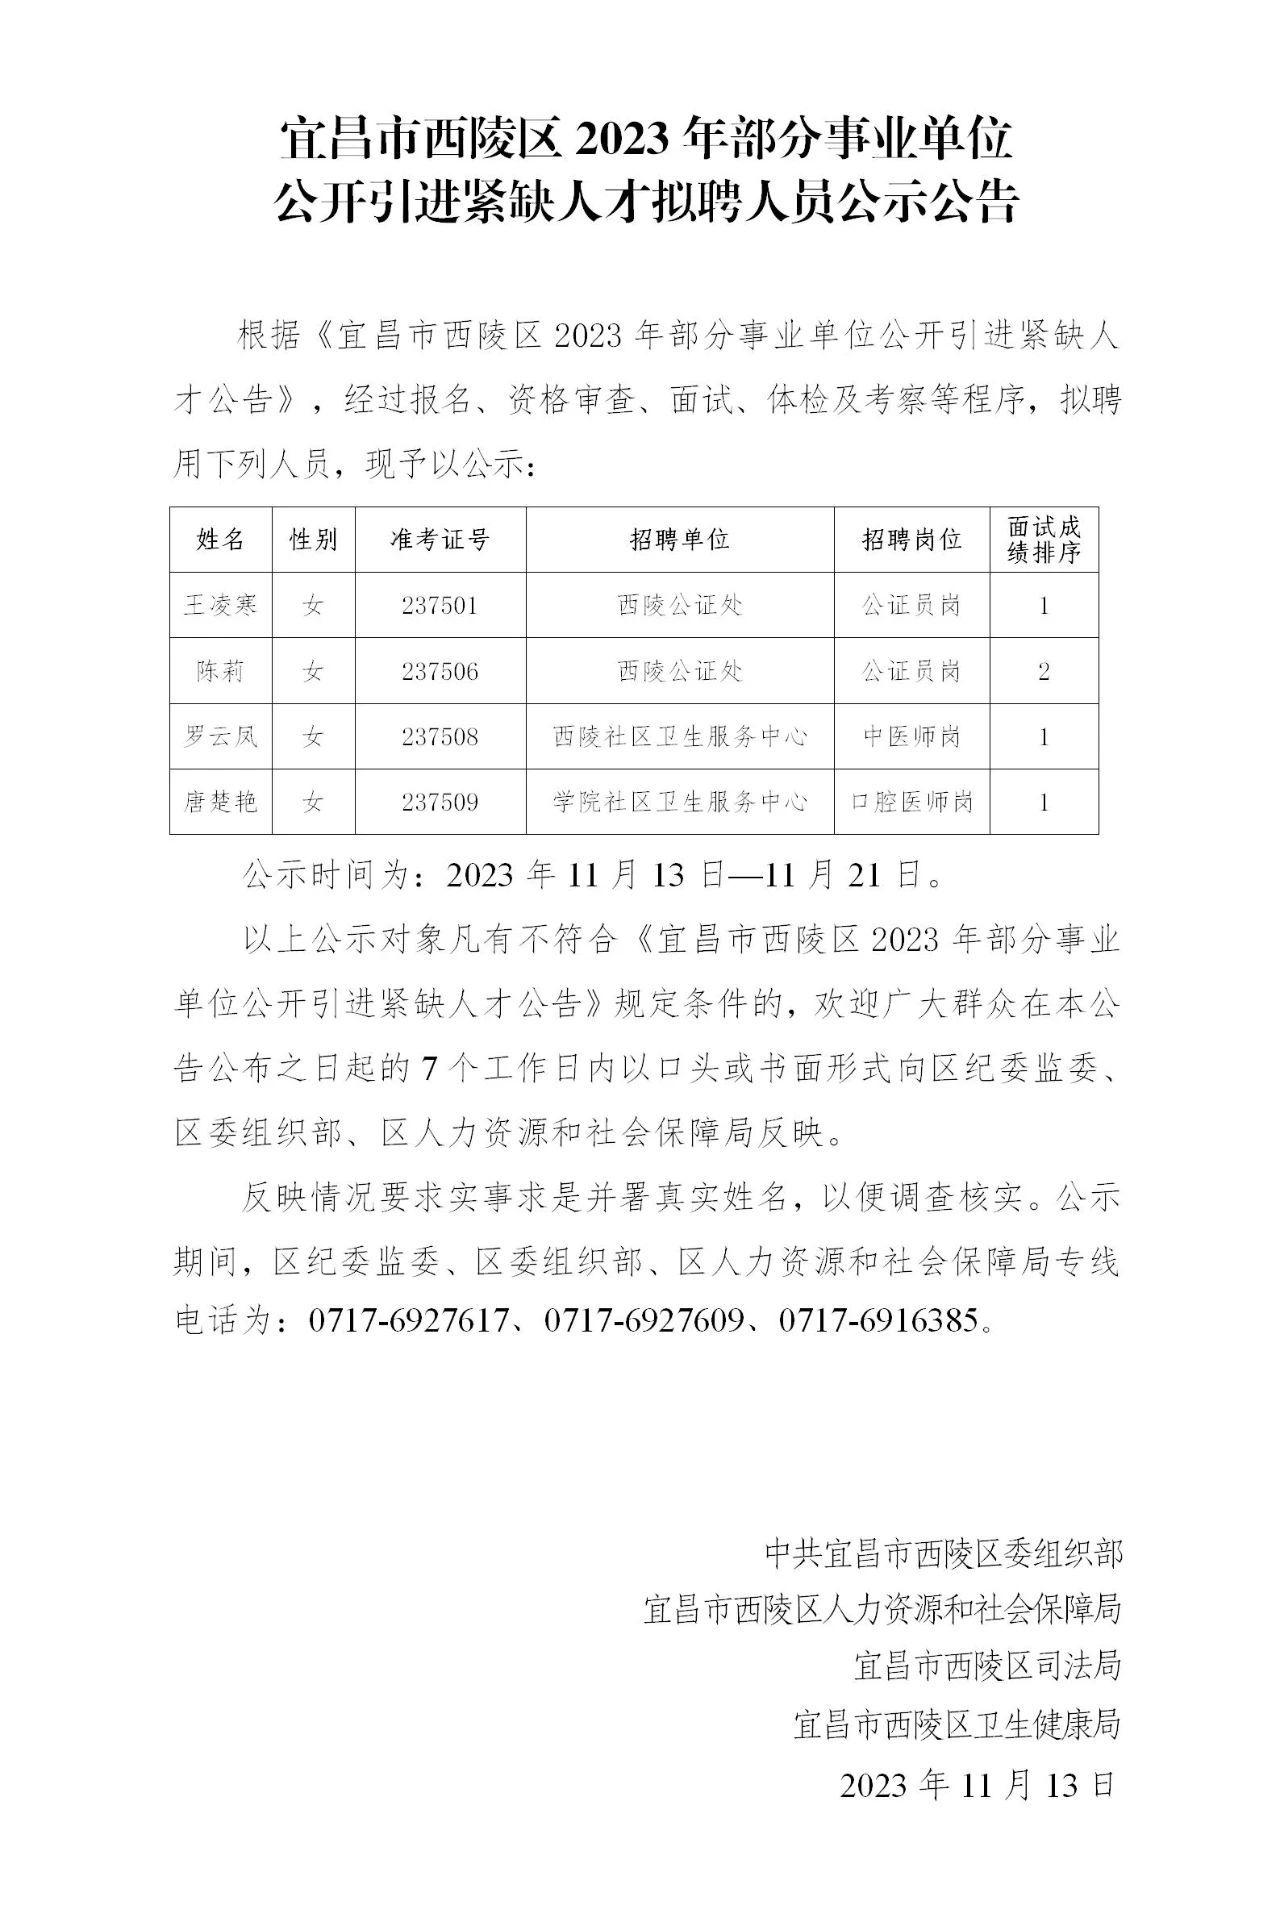 2023年宜昌市西陵区部分事业单位公开引进紧缺人才拟聘人员公示公告